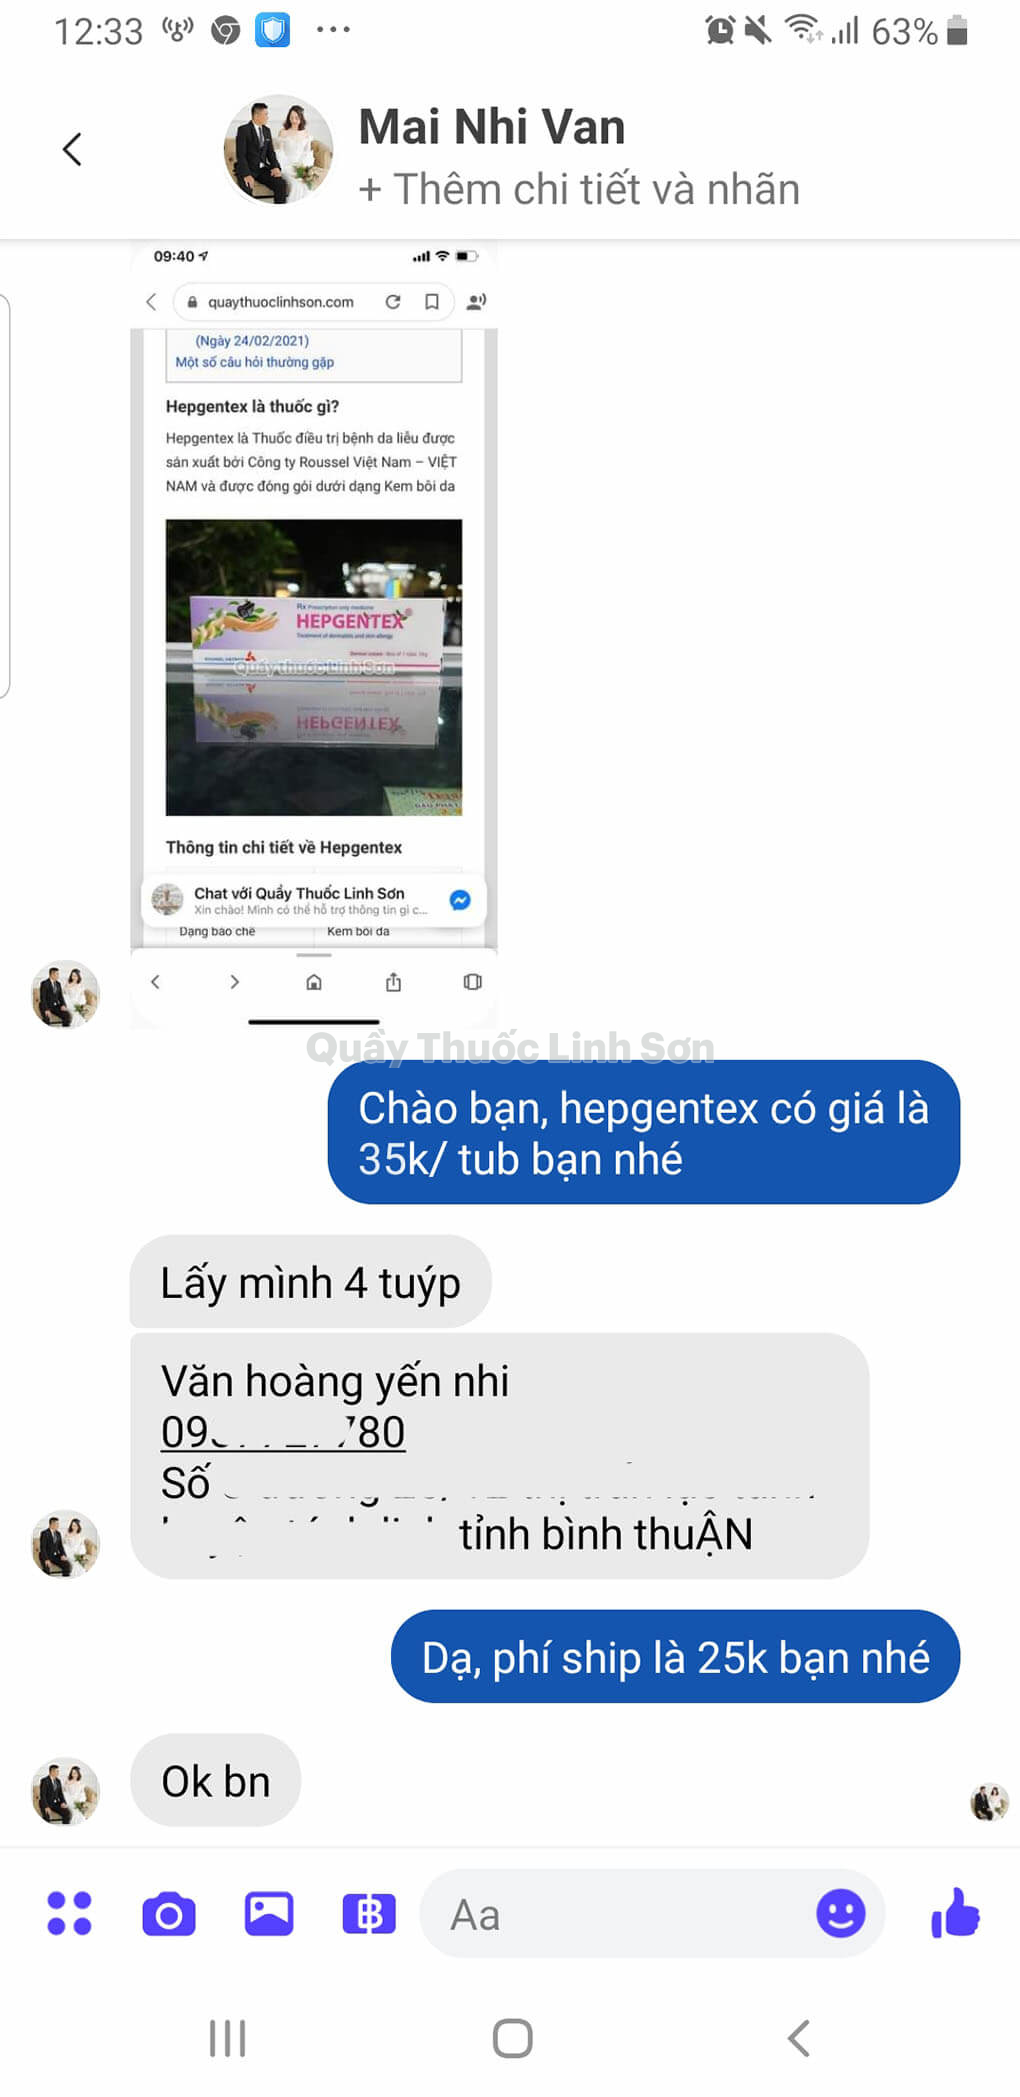 Bạn Yến Nhi ở Bình Thuận mua 4 tuýp Hepgentex 10g